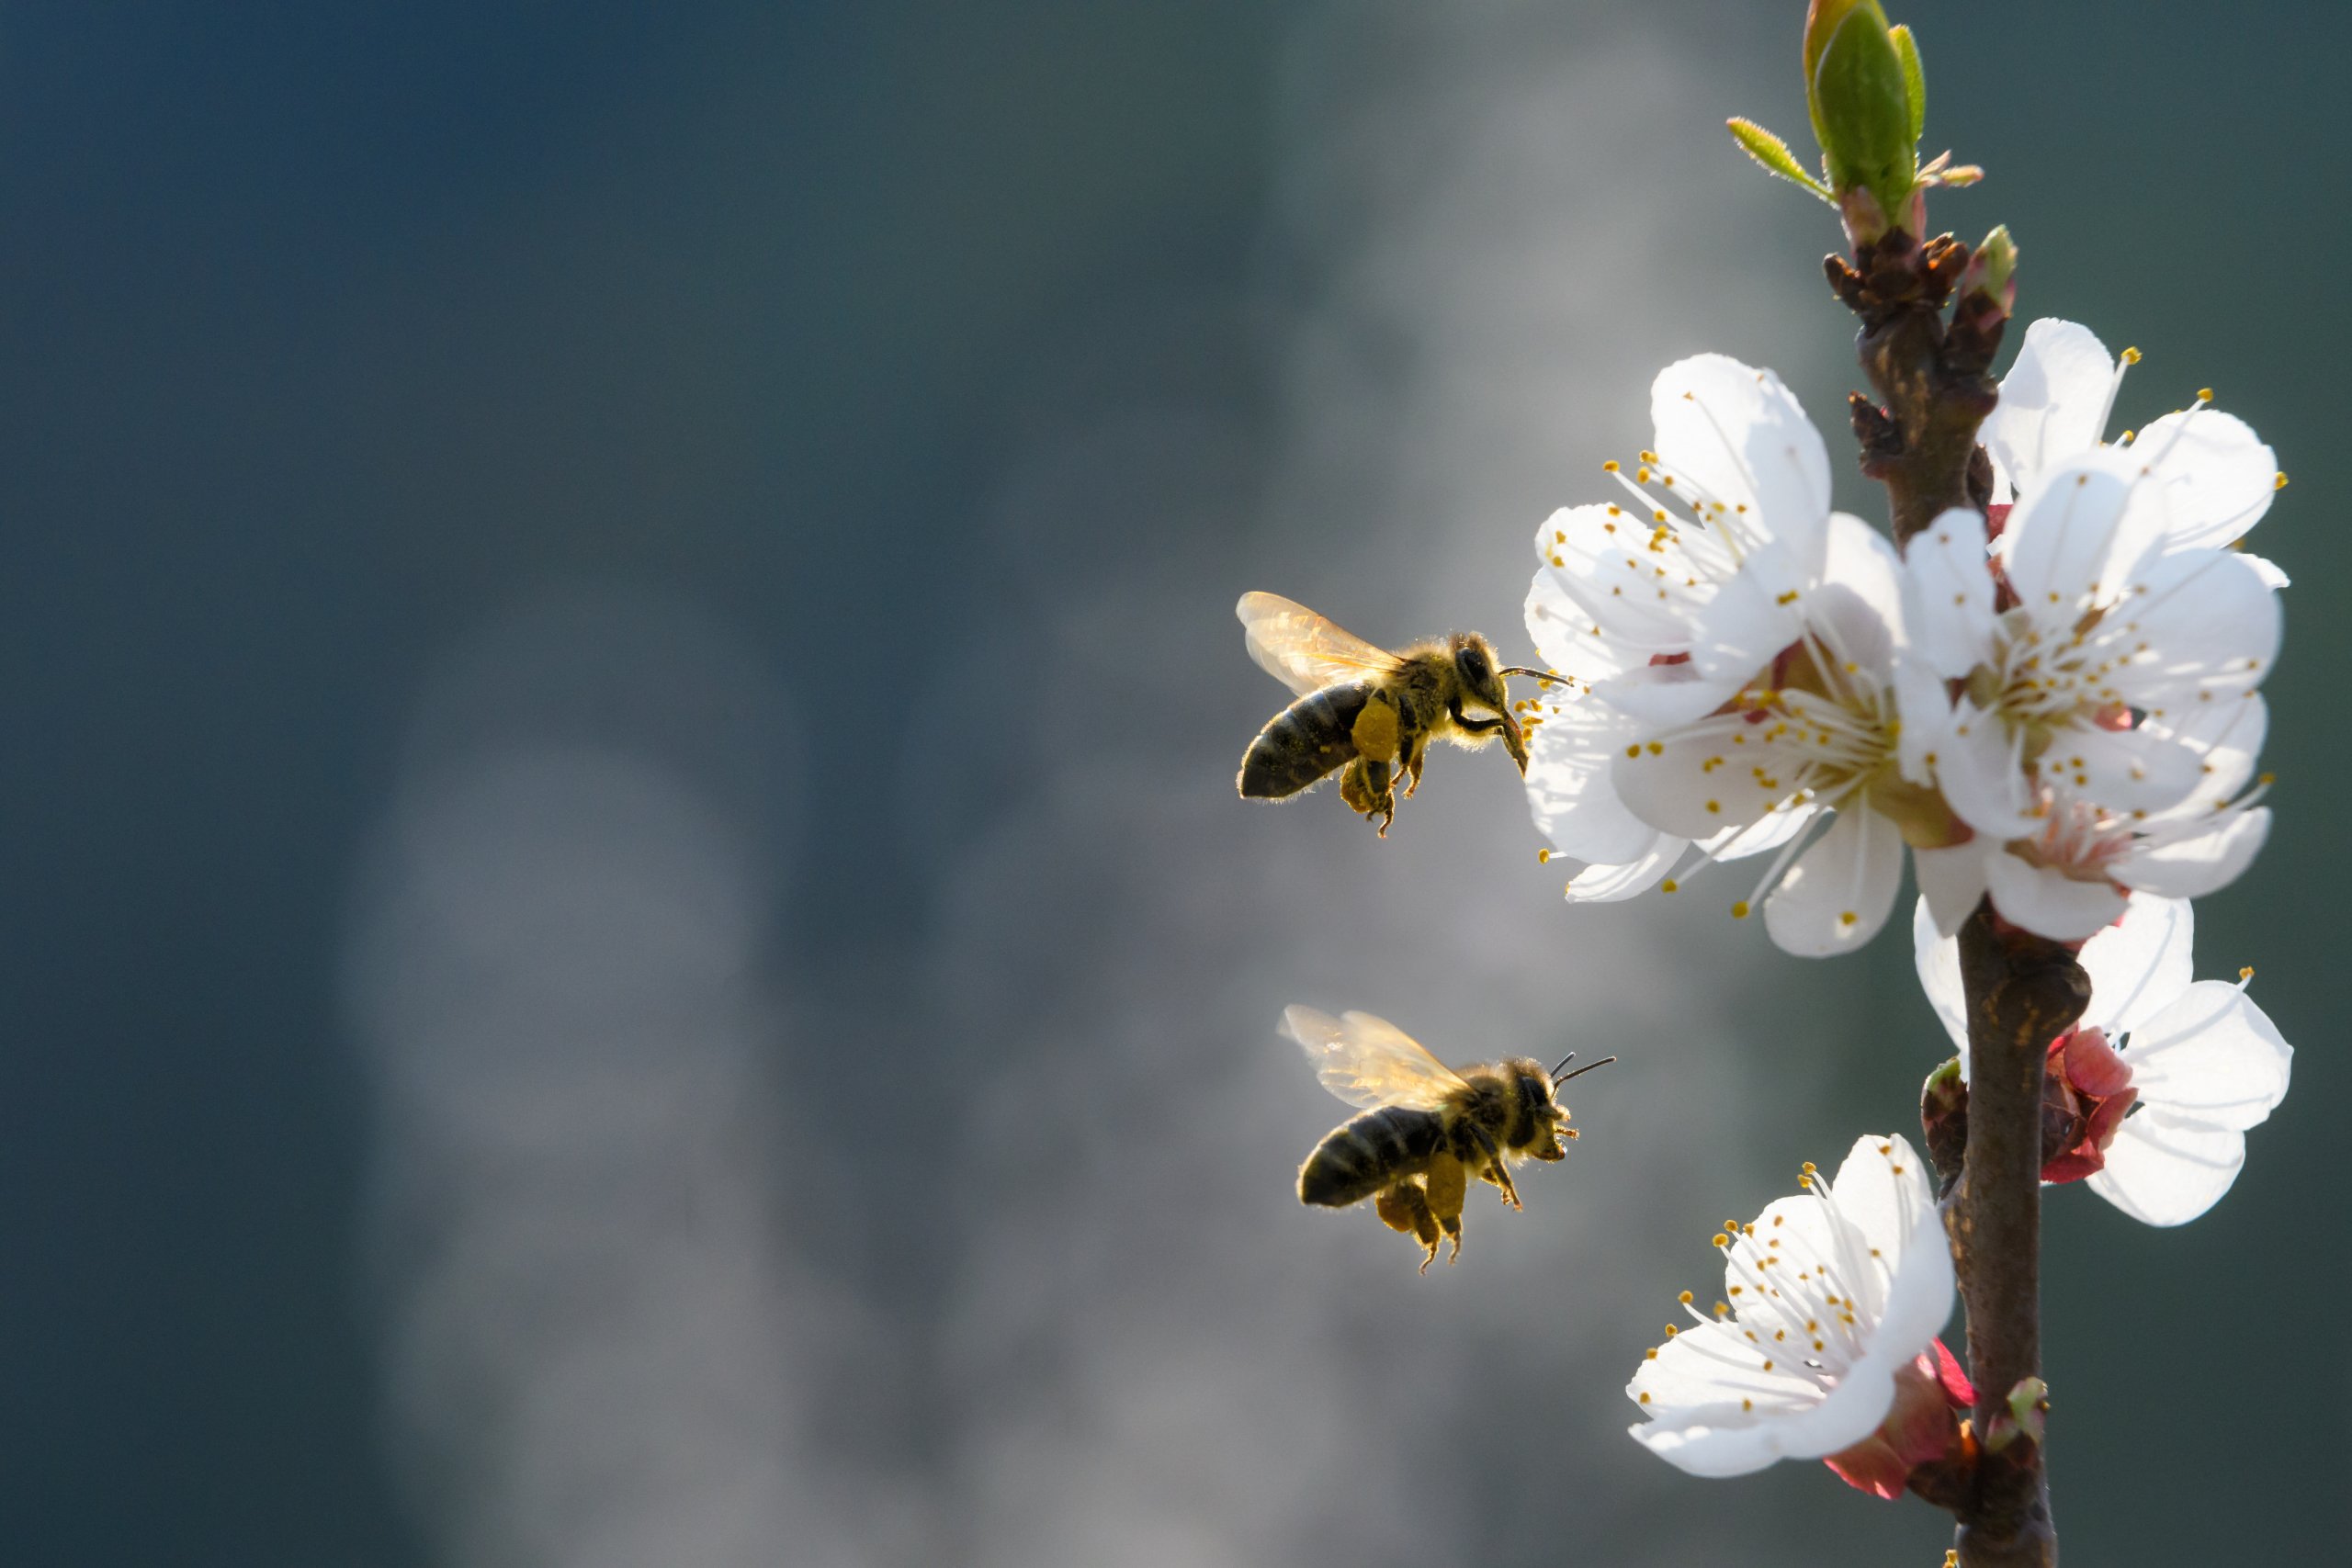 Zwei Bienen im Anflug auf die Blüten eines Aprikosenbaumes